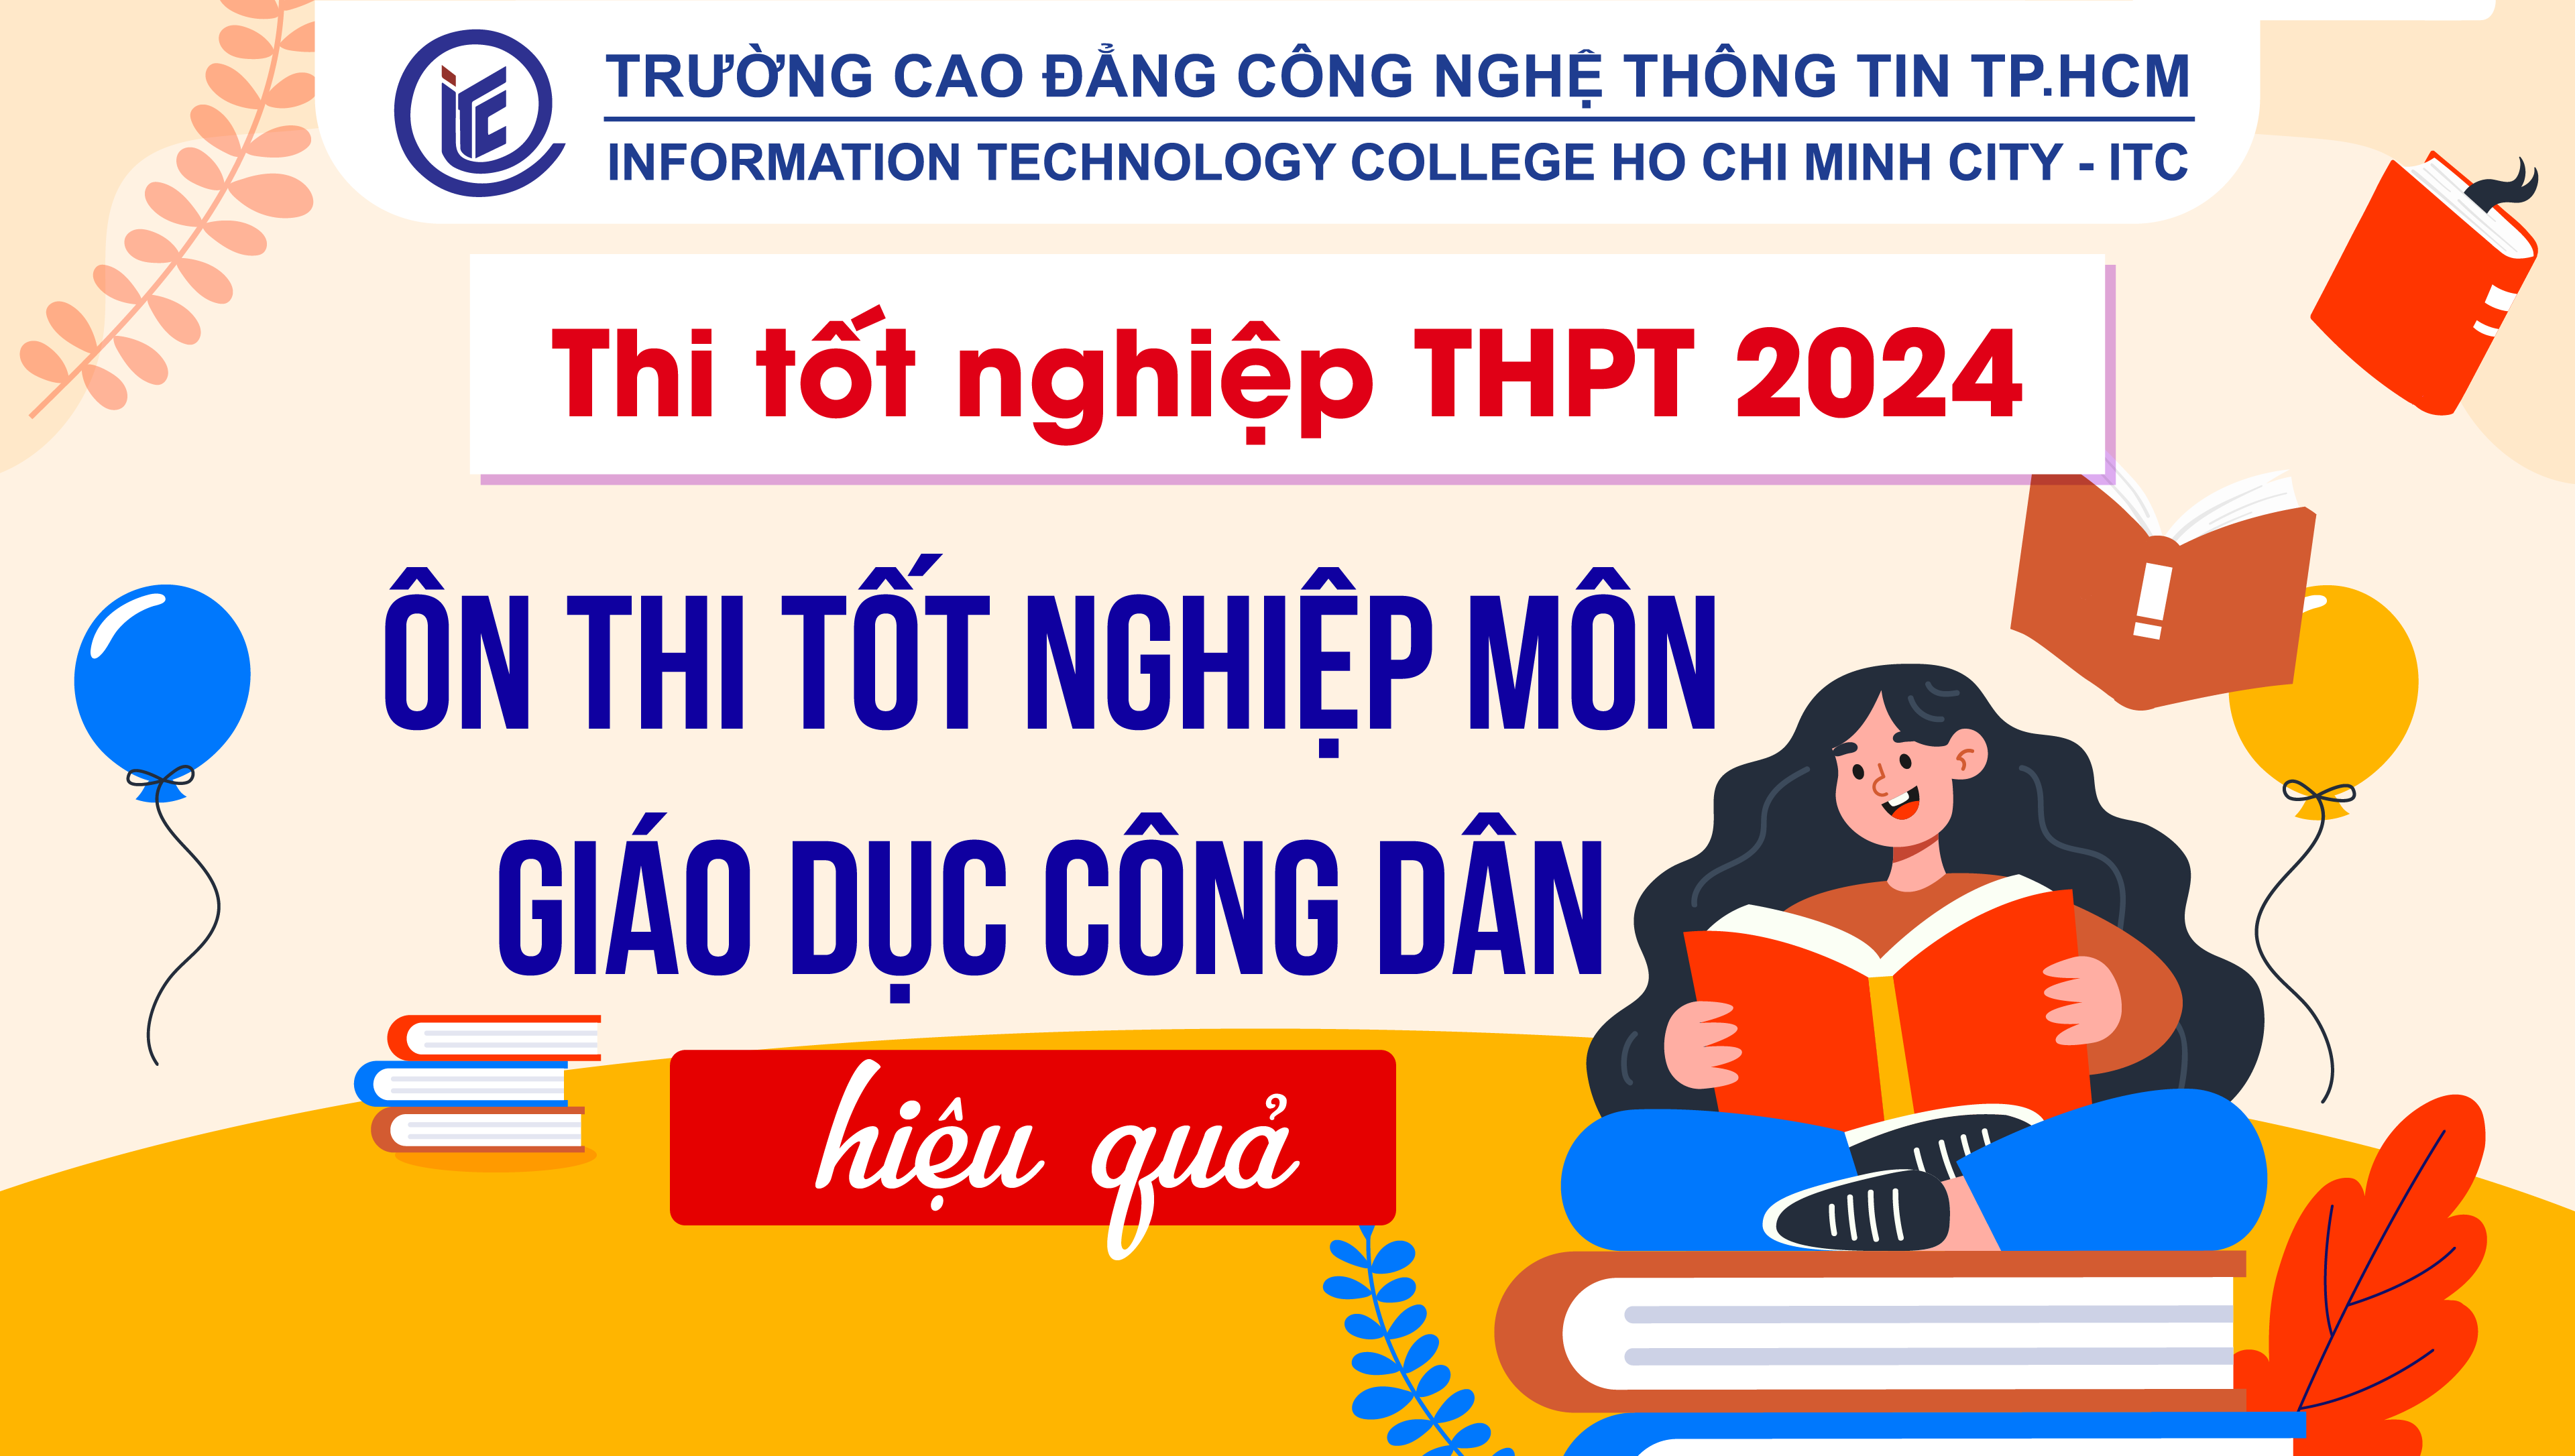 Thi tốt nghiệp THPT 2024: Ôn thi tốt nghiệp môn Giáo dục công dân hiệu quả